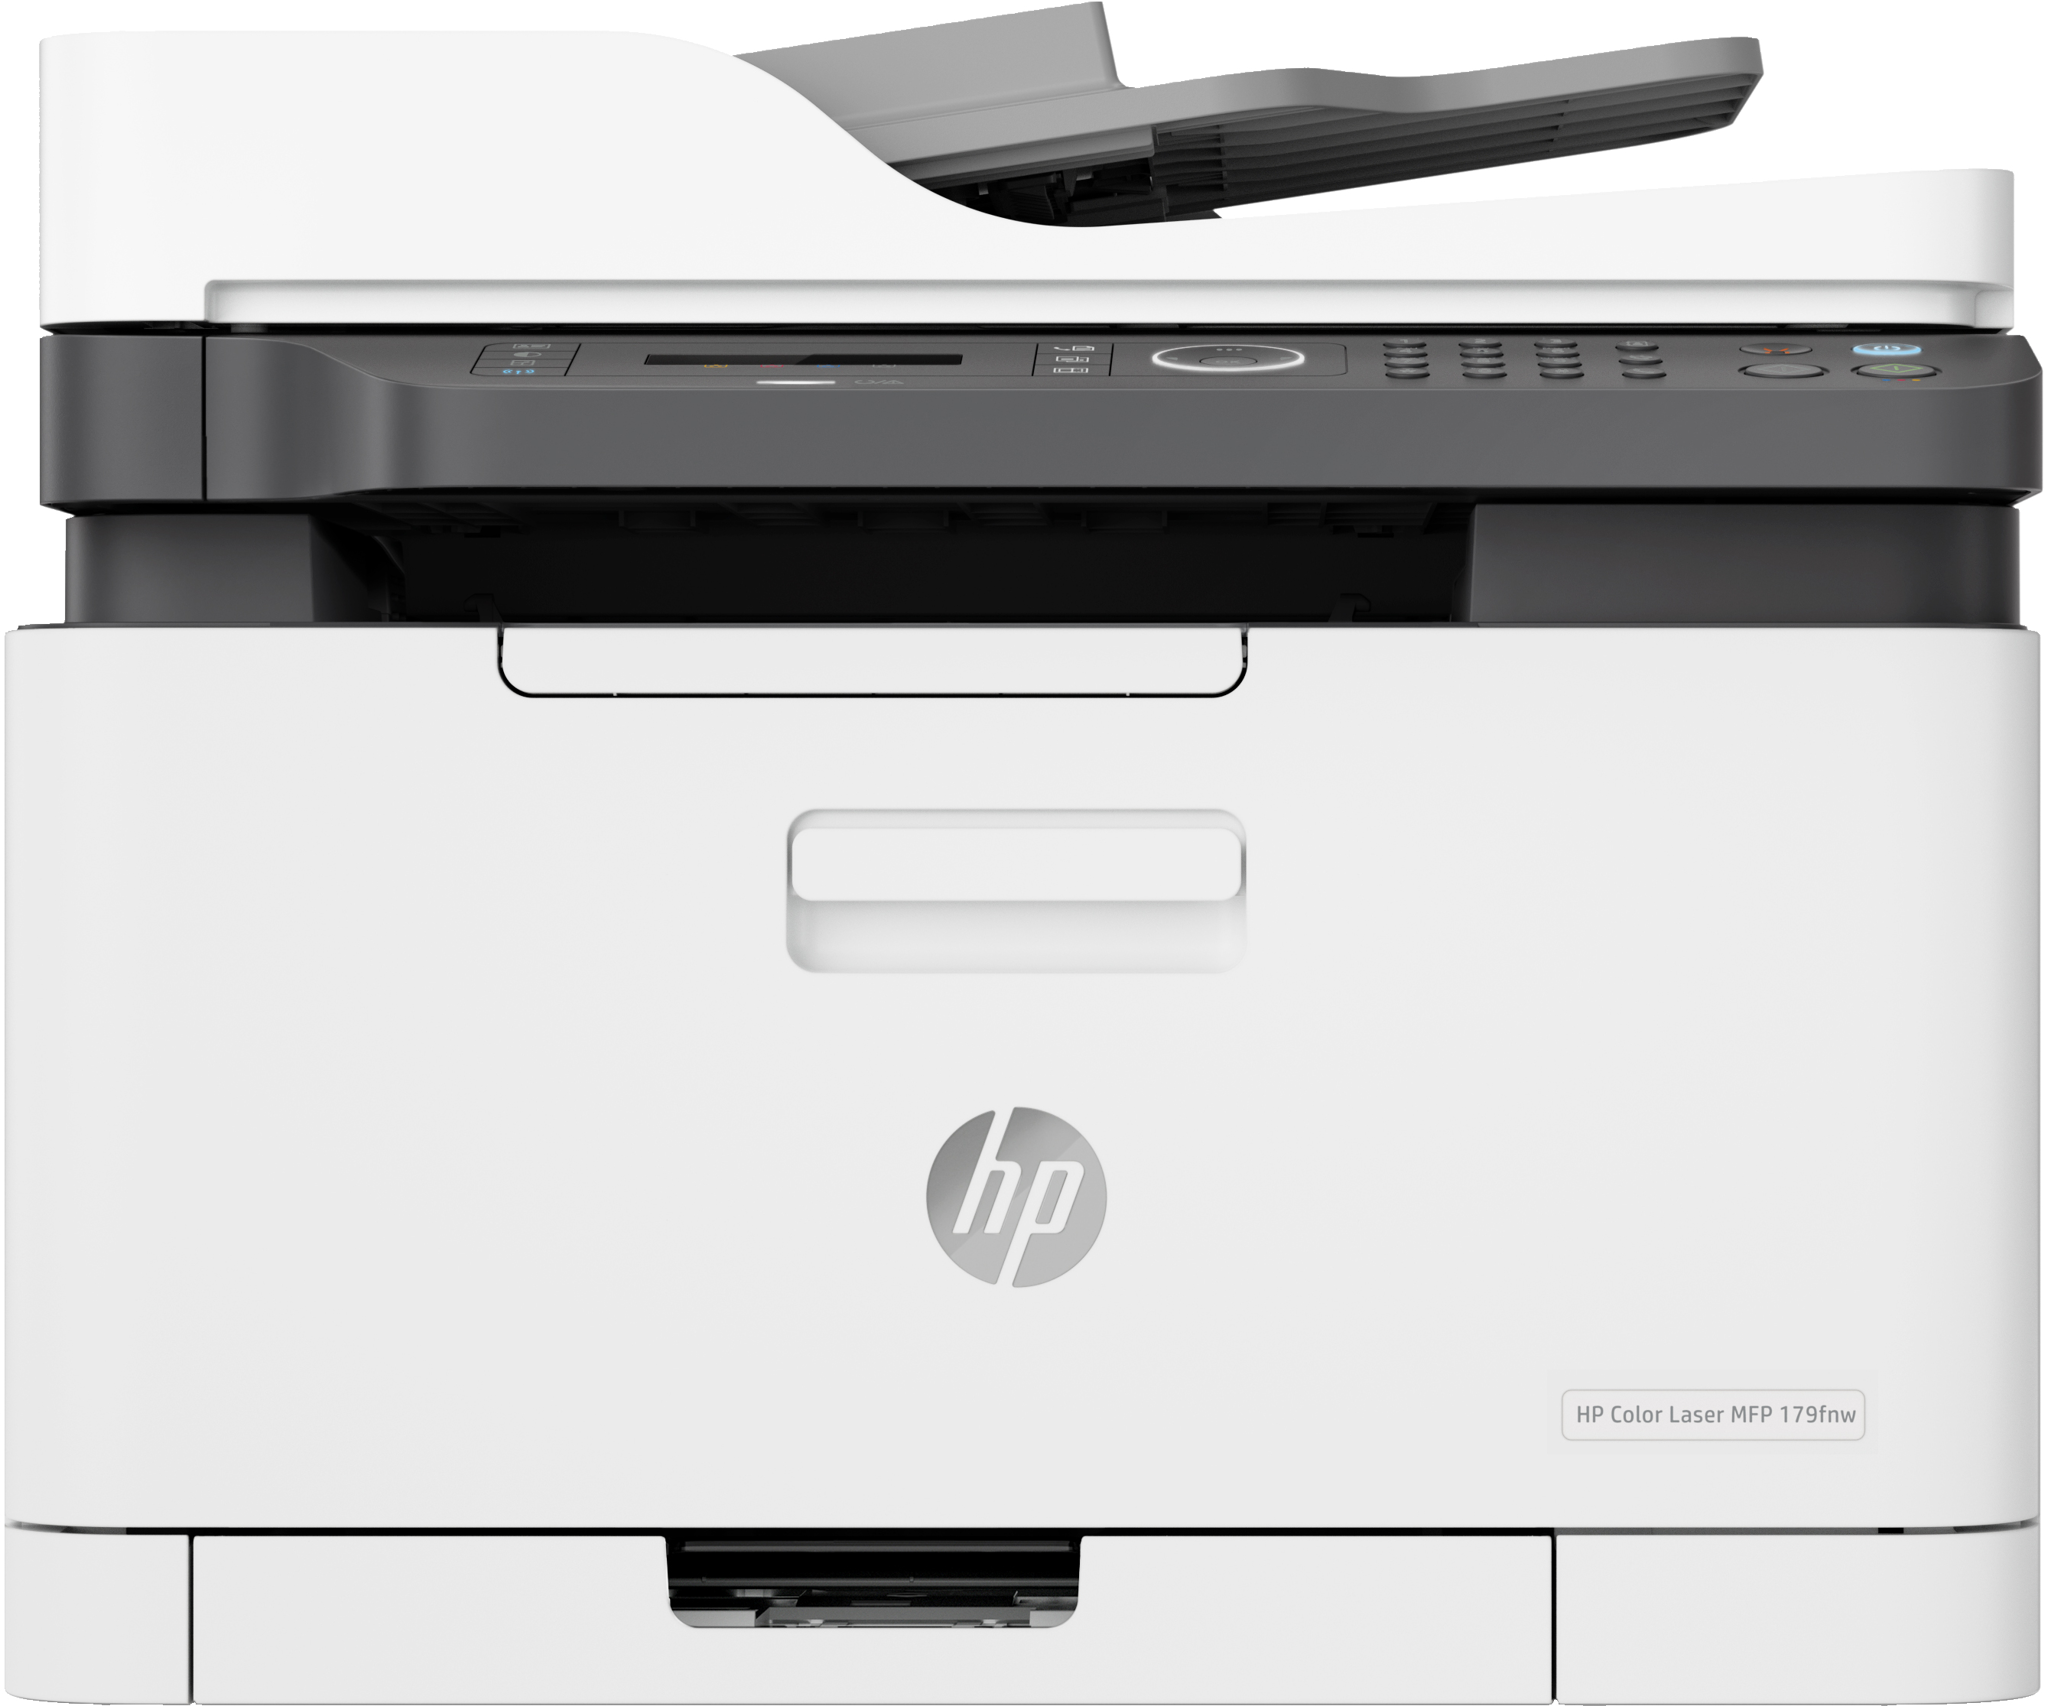 Bild von HP Color Laser MFP 179fnw - Laser - Farbdruck - 600 x 600 DPI - A4 - Direktdruck - Schwarz - Weiß